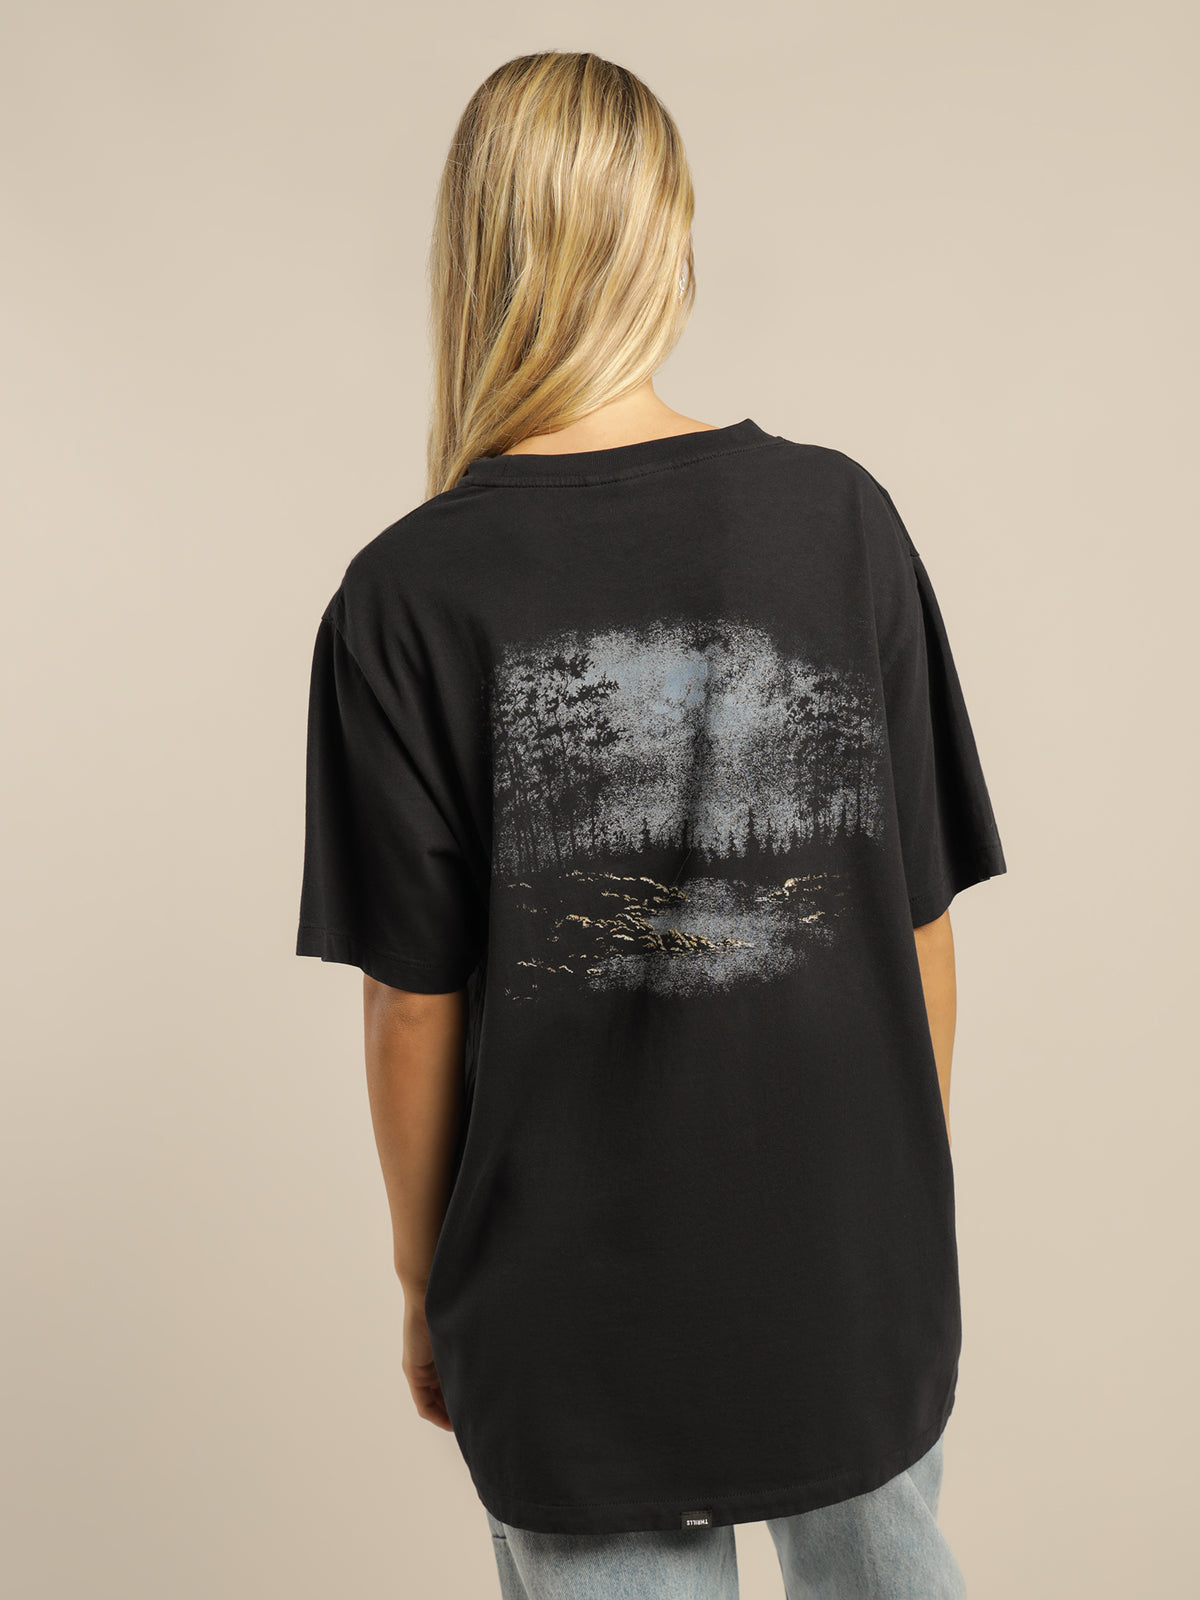 Twilight Merch Fit T-Shirt in Twilight Black